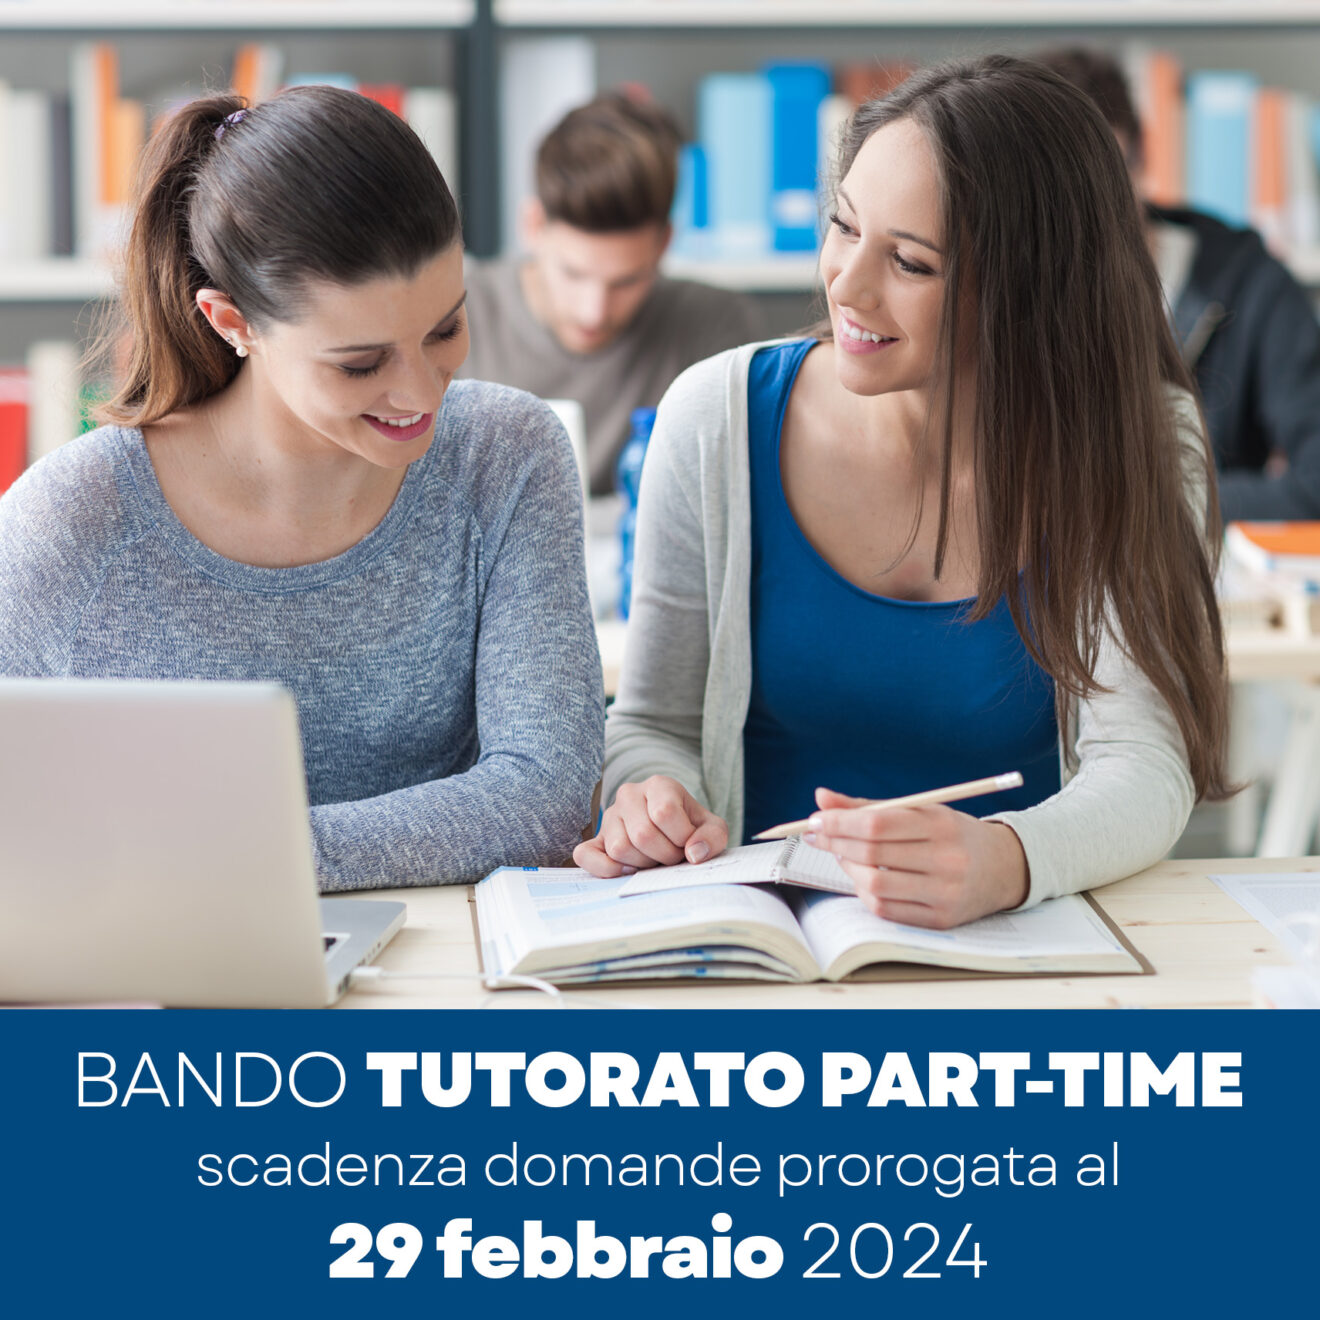 Attività part-time tutorato 200 ore - scadenza domande prorogata al 29 febbraio